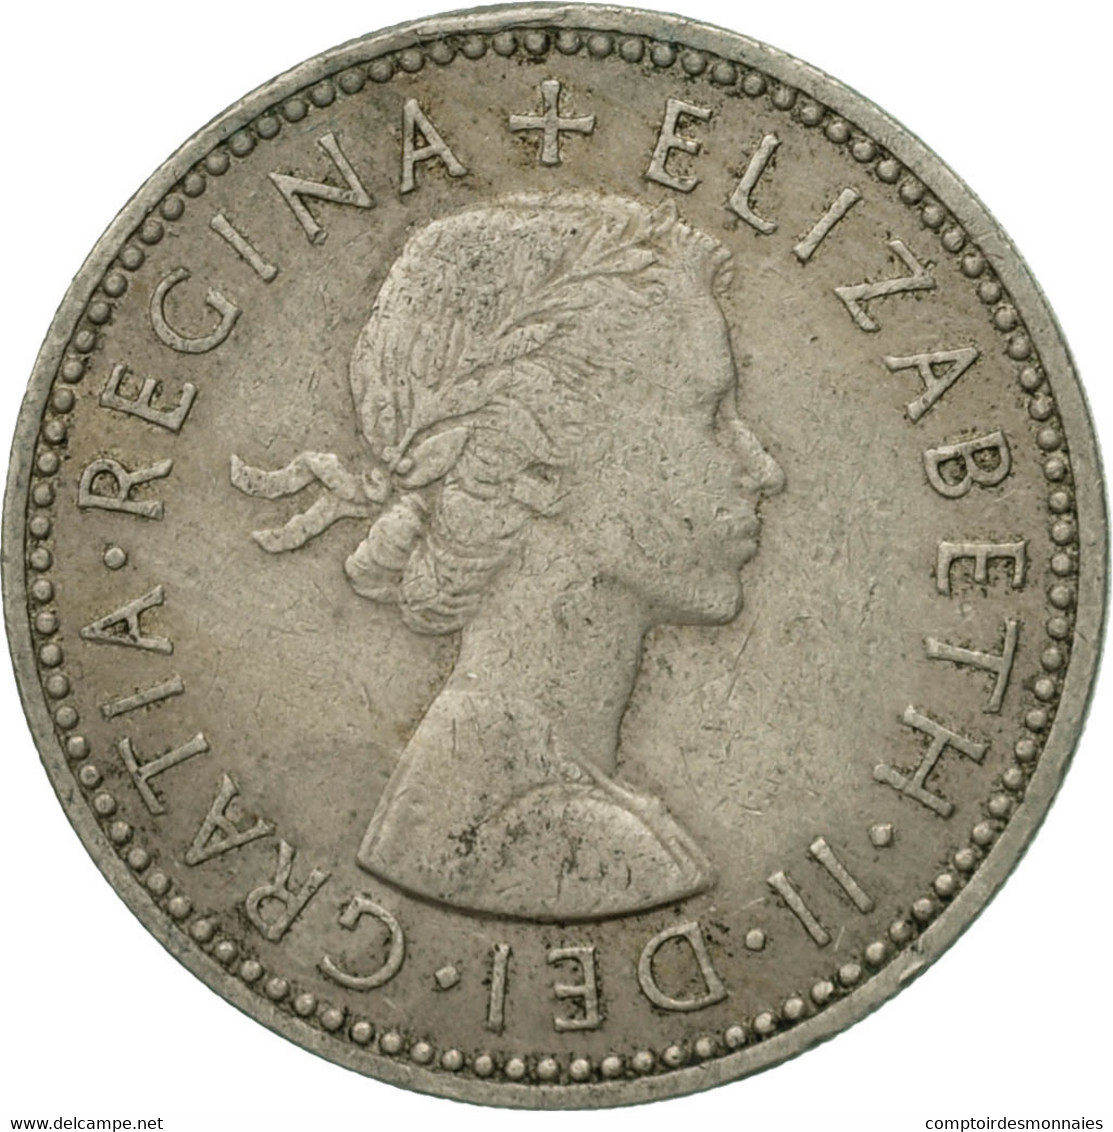 Monnaie, Grande-Bretagne, Elizabeth II, Shilling, 1954, TB+, Copper-nickel - I. 1 Shilling